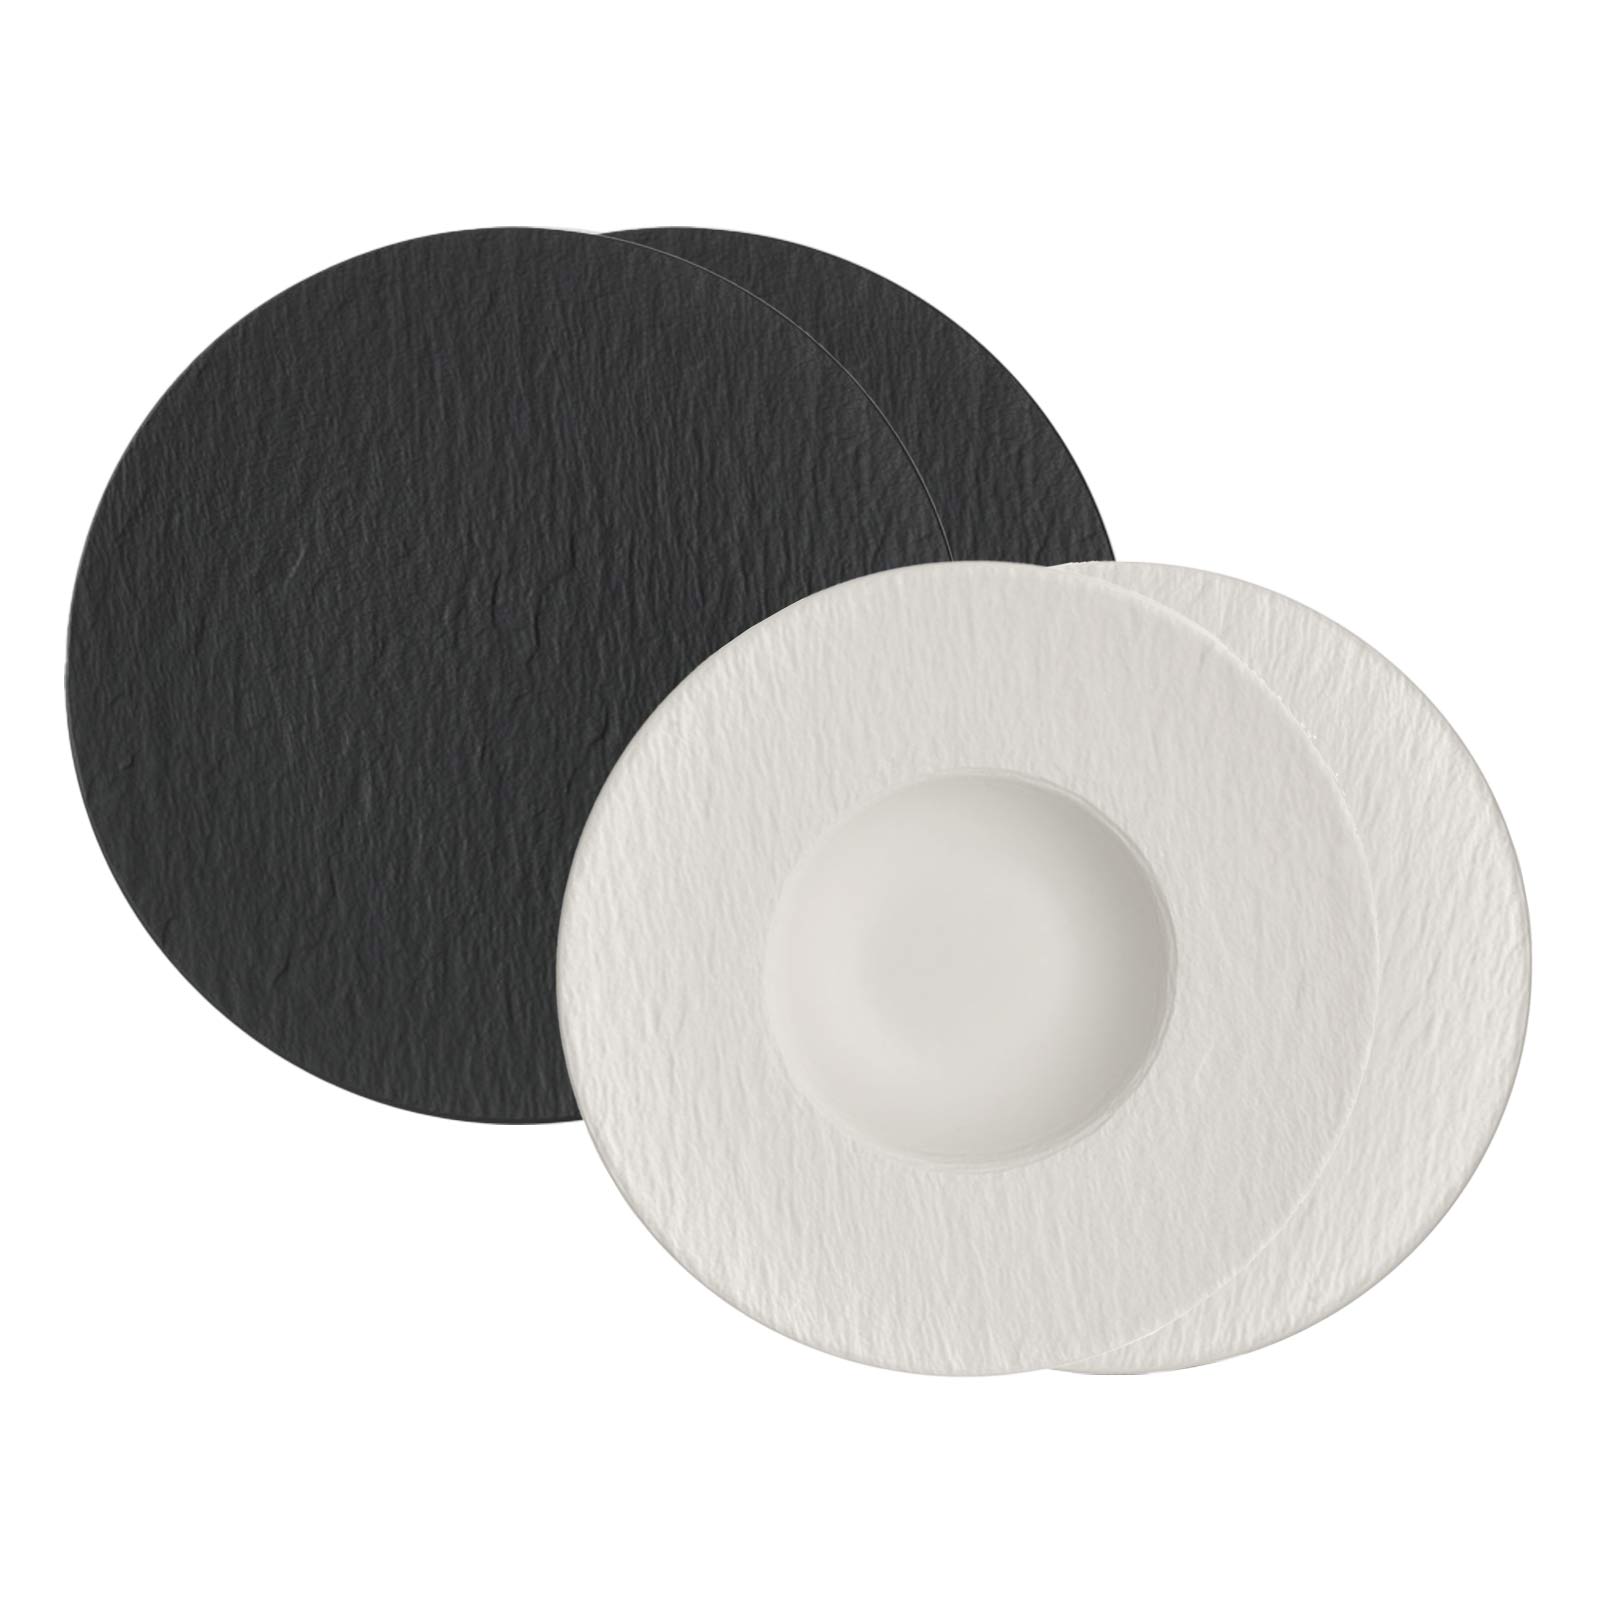 & Pasta-Set schwarz&weiß der Manufacture für Rock Genießer | Luxentu Boch Villeroy Shop